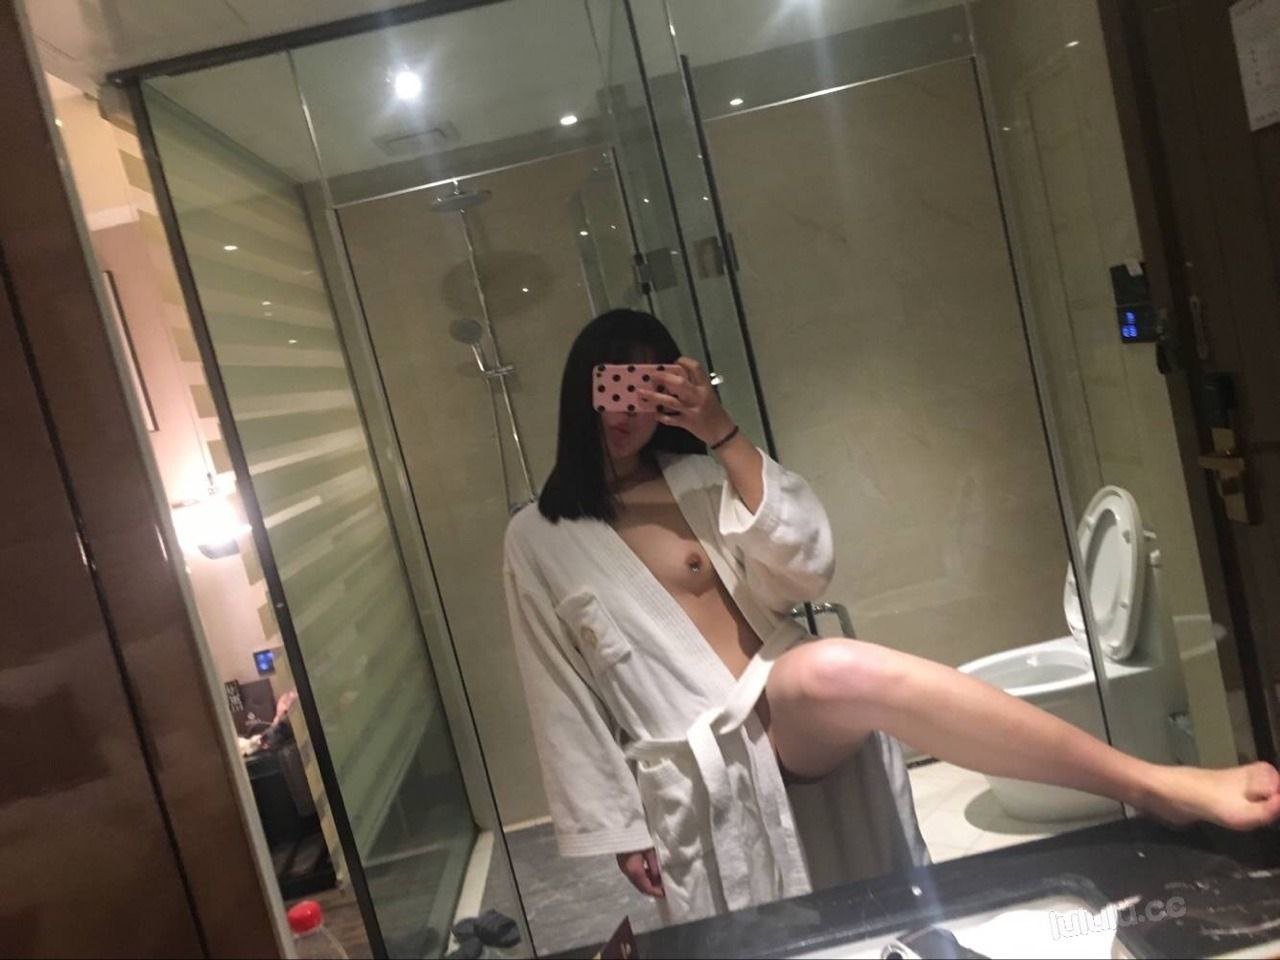 Amateur Asian after sex selfie - Porn image